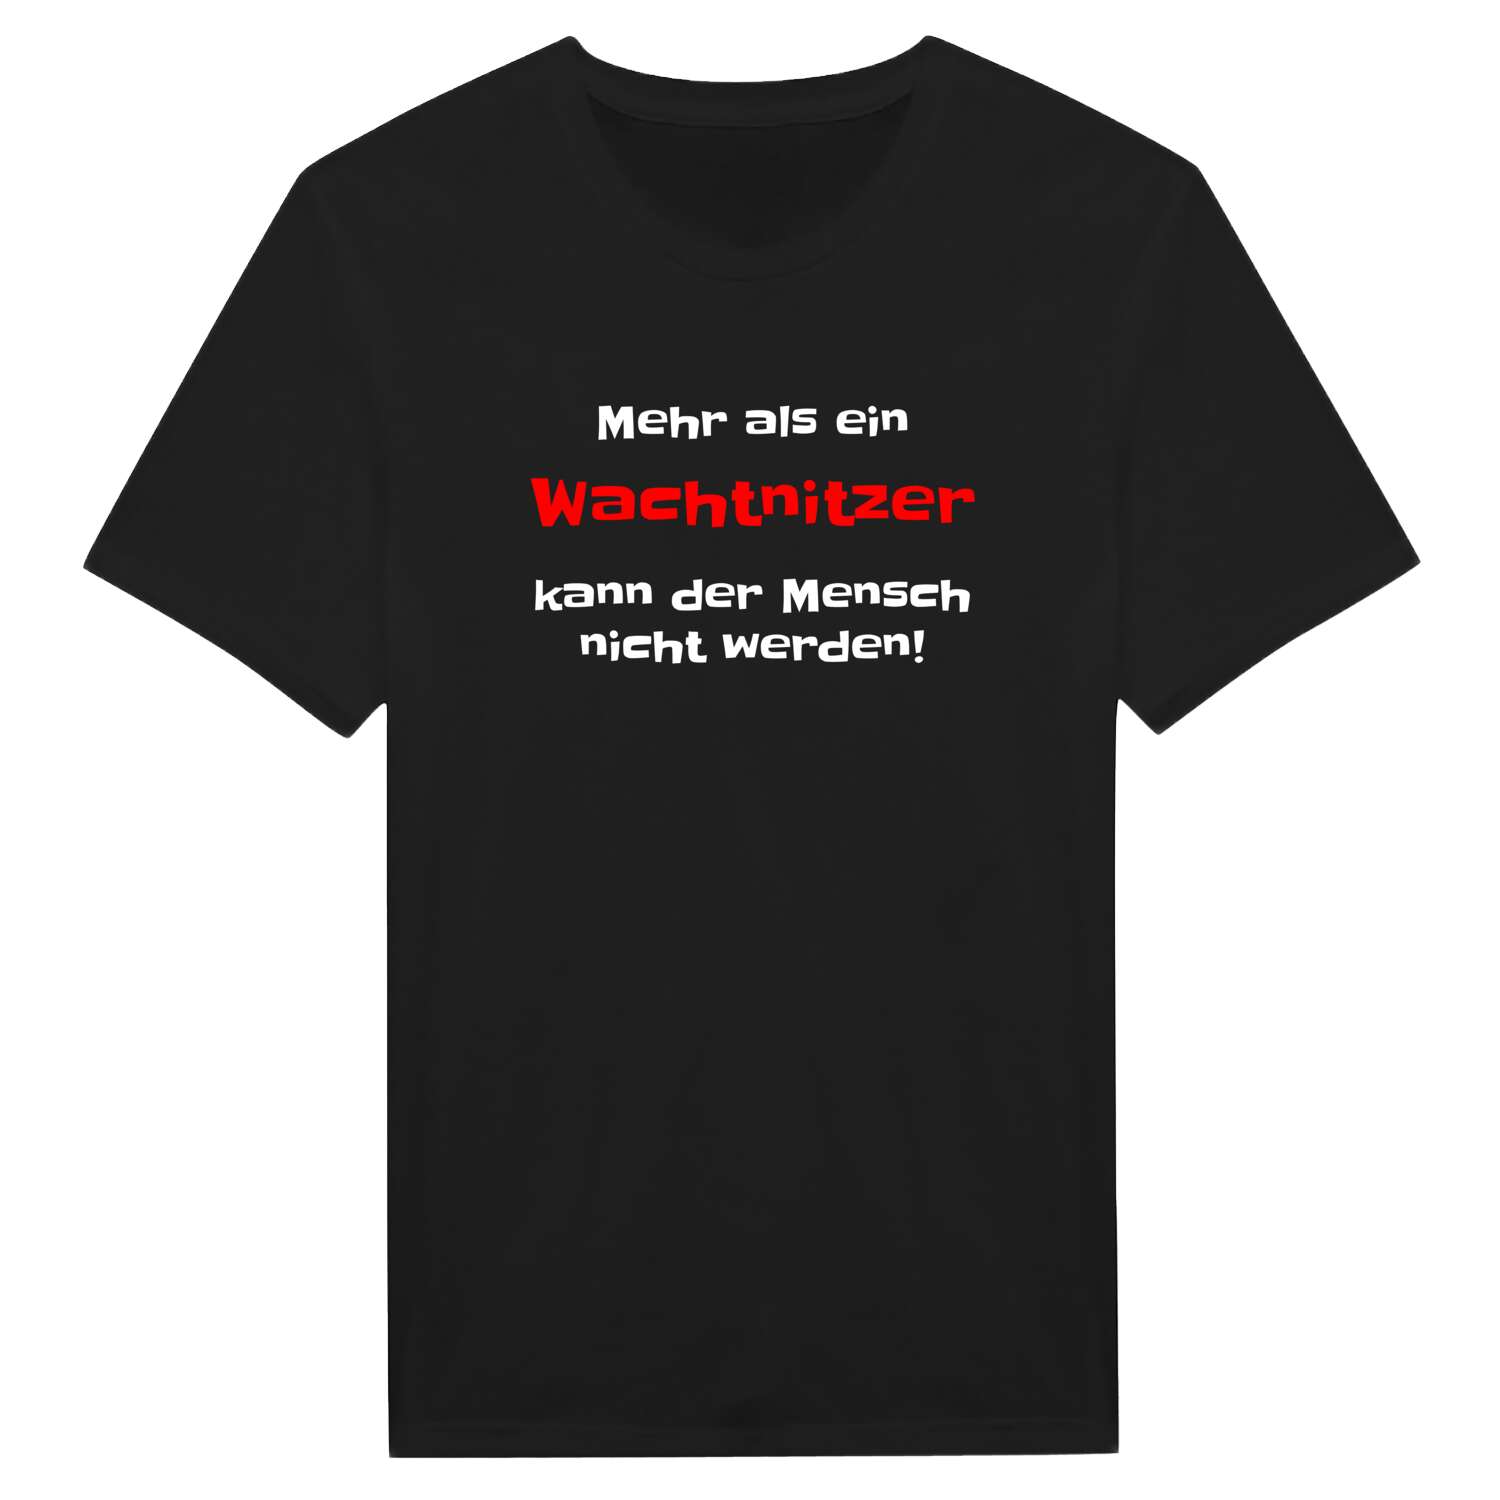 Wachtnitz T-Shirt »Mehr als ein«